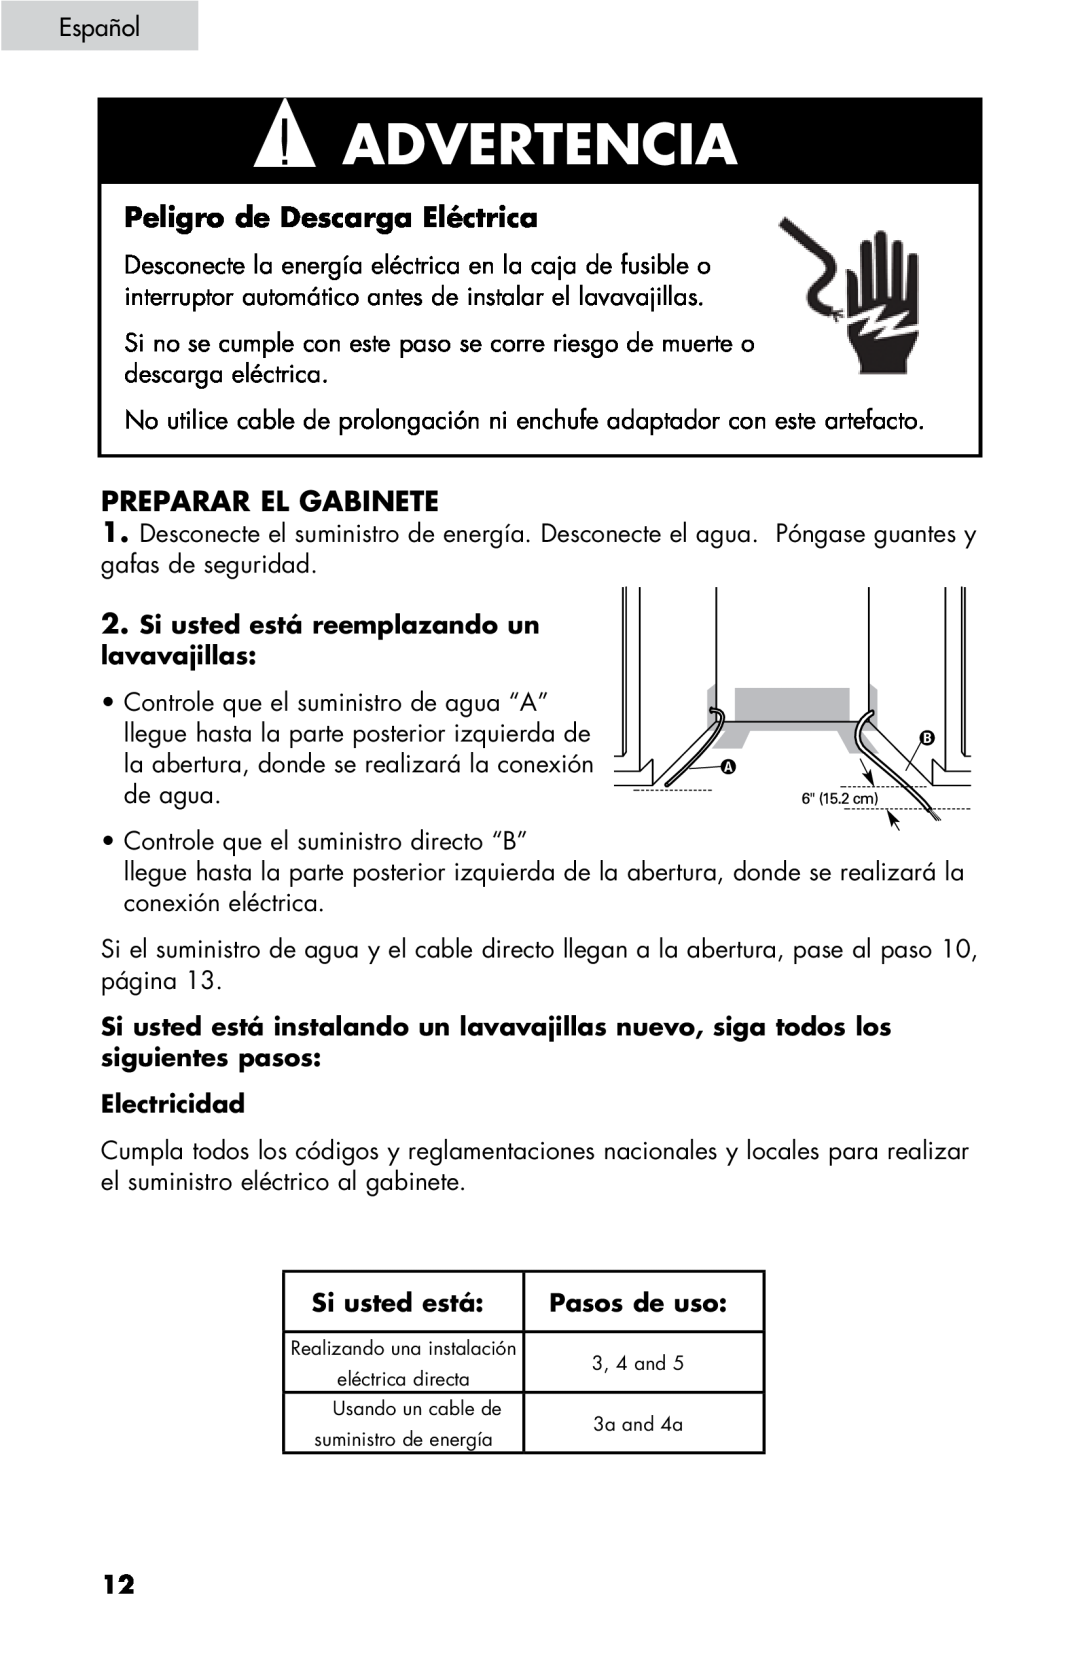 Haier DW-7777-01 manual Peligro de Descarga Eléctrica, Preparar el gabinete, Si usted está reemplazando un lavavajillas 